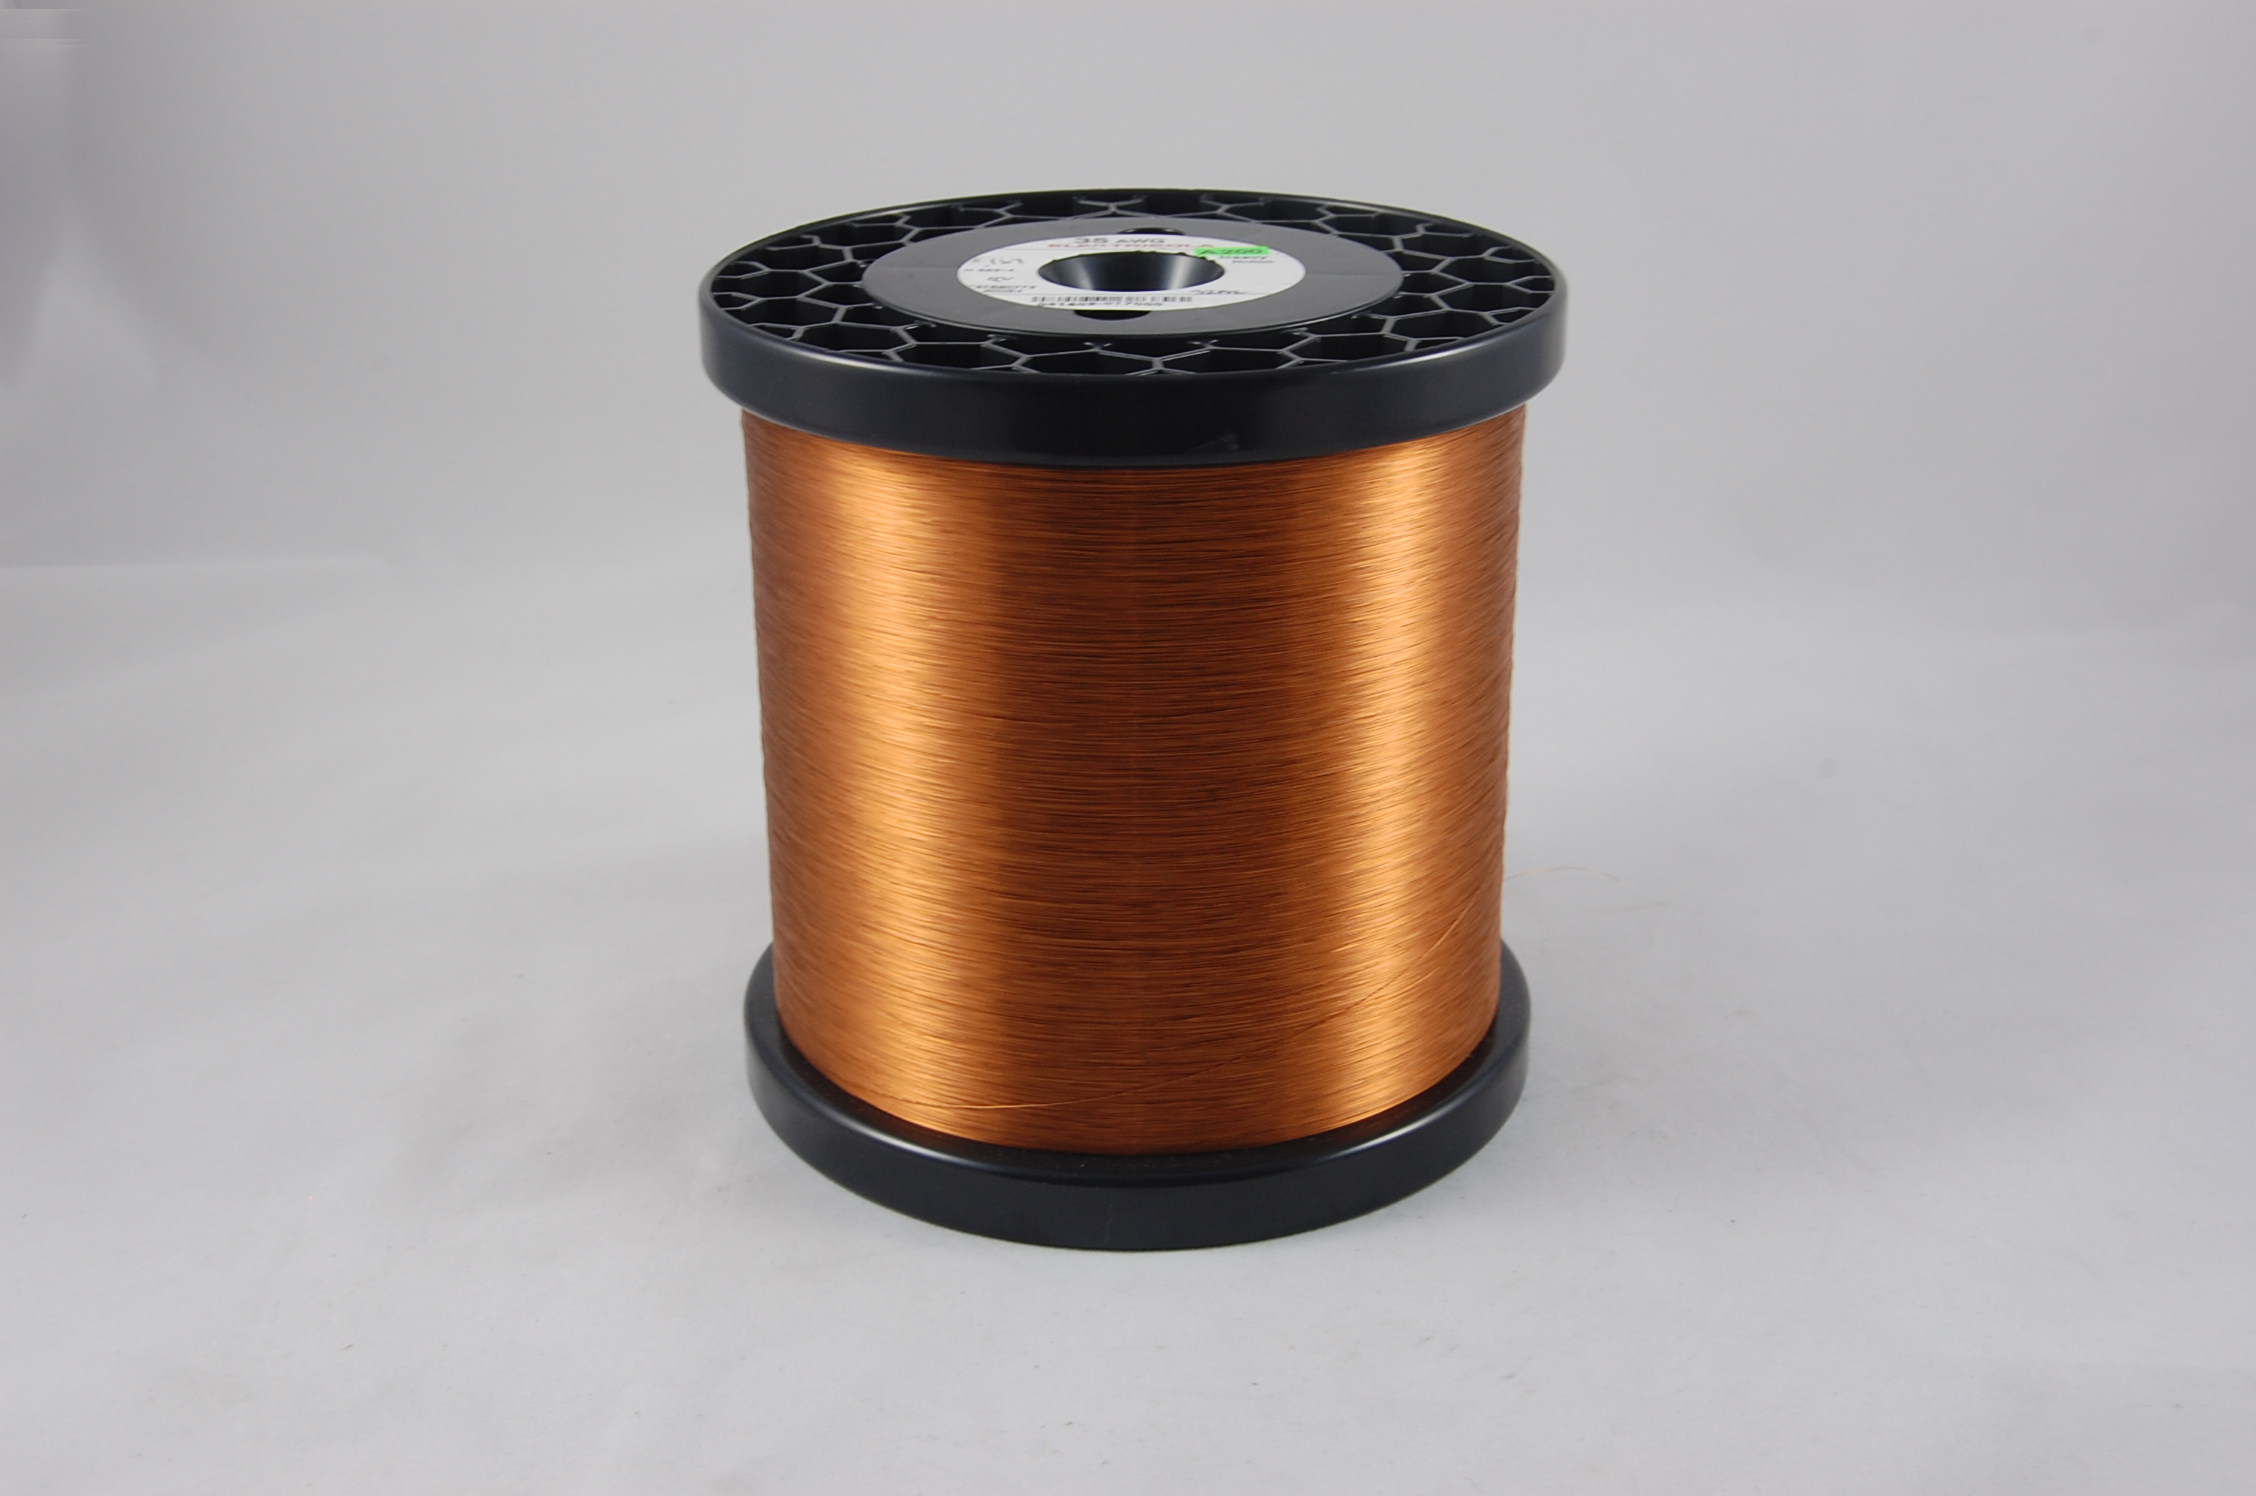 #45 Single Amidester 200 Round MW 74 Copper Magnet Wire 200°C, copper,  14 LB 6" x 6" spool (average wght.)